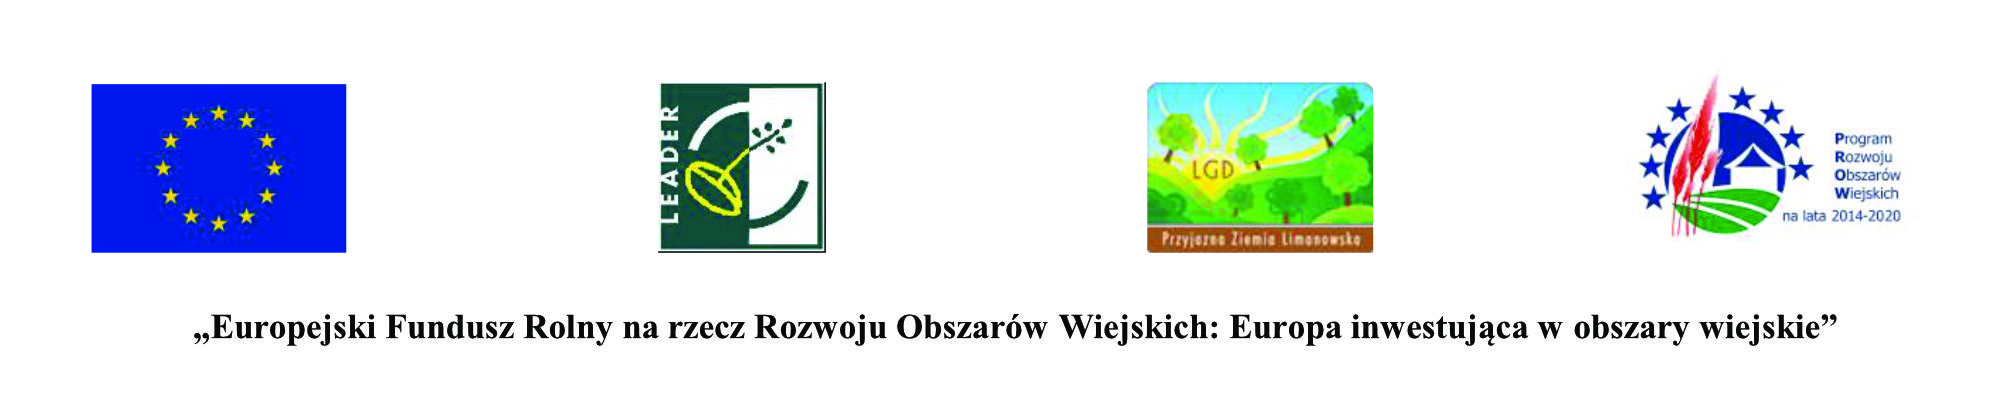 Logotypy Unii europejskiej, LEADER, LGD Limanowa oraz Programu Rozwoju Obszarów Wiejskich